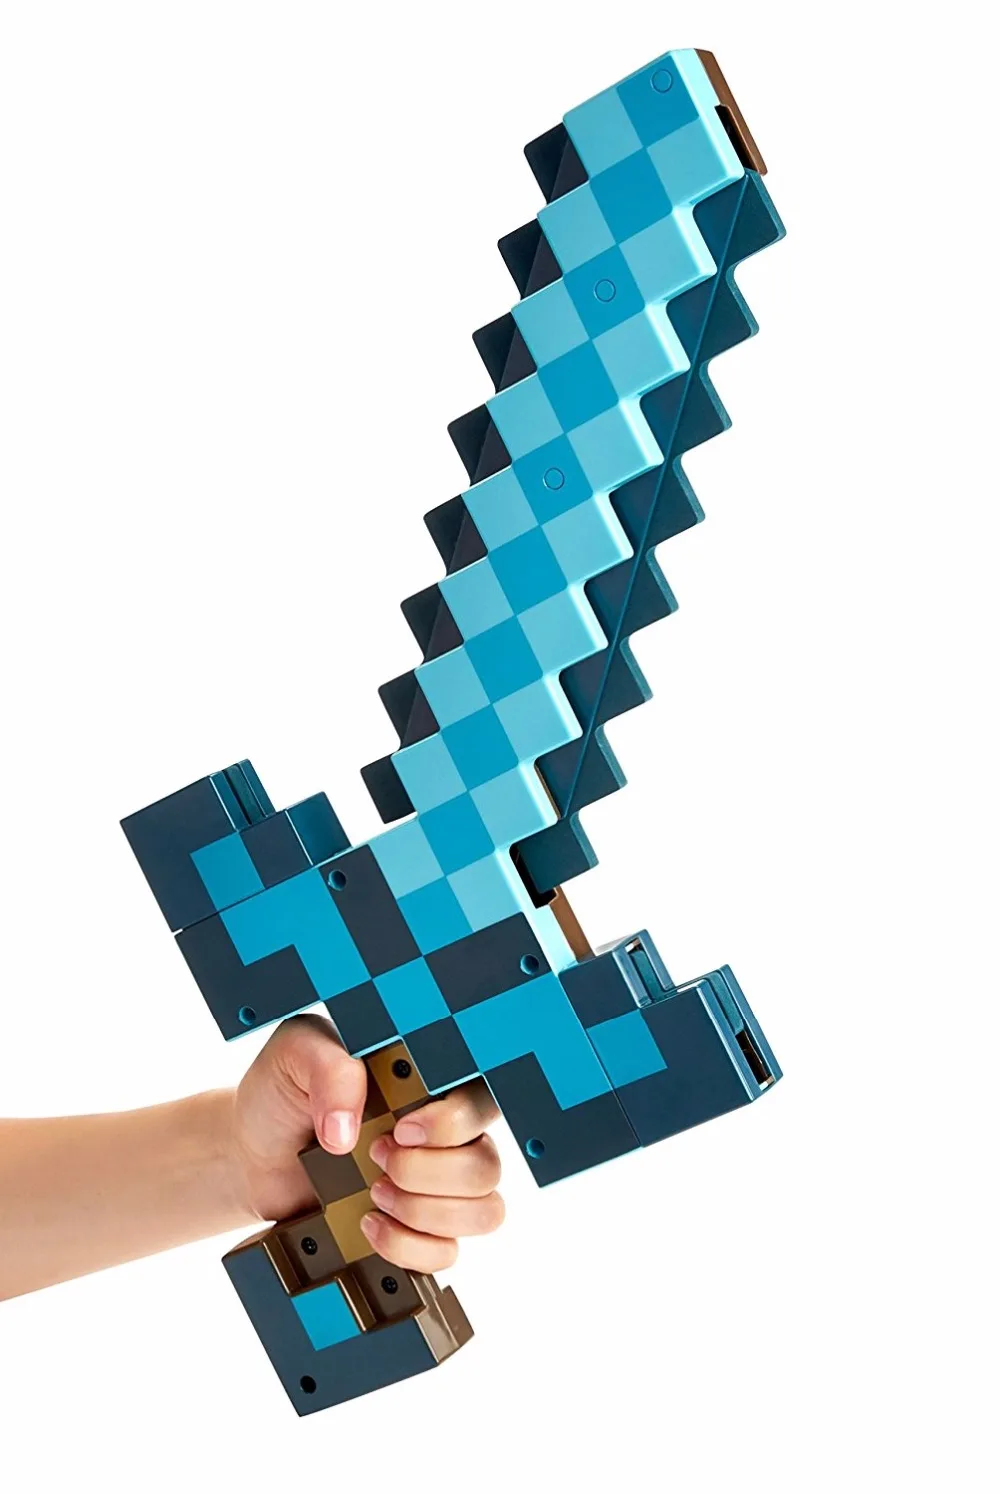 Мини-игрушка Пиксельная мозаика Minecr лук и стрела меч Кирка набор из пластика Собранный набор детской игровой игрушки